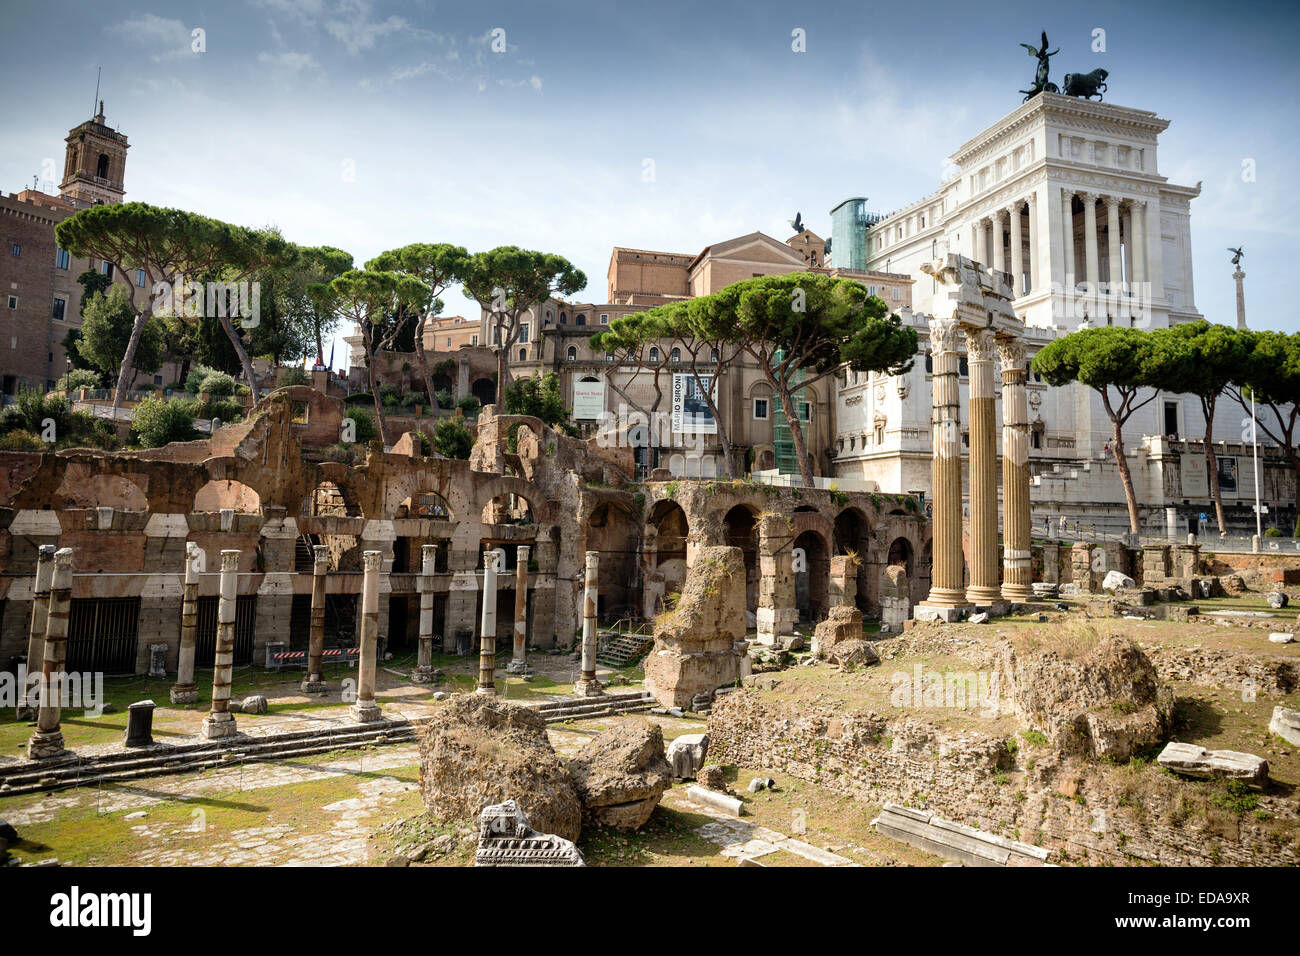 Ruines de Palatin Forum Romanum, Rome, Latium, Italie, Europe Banque D'Images